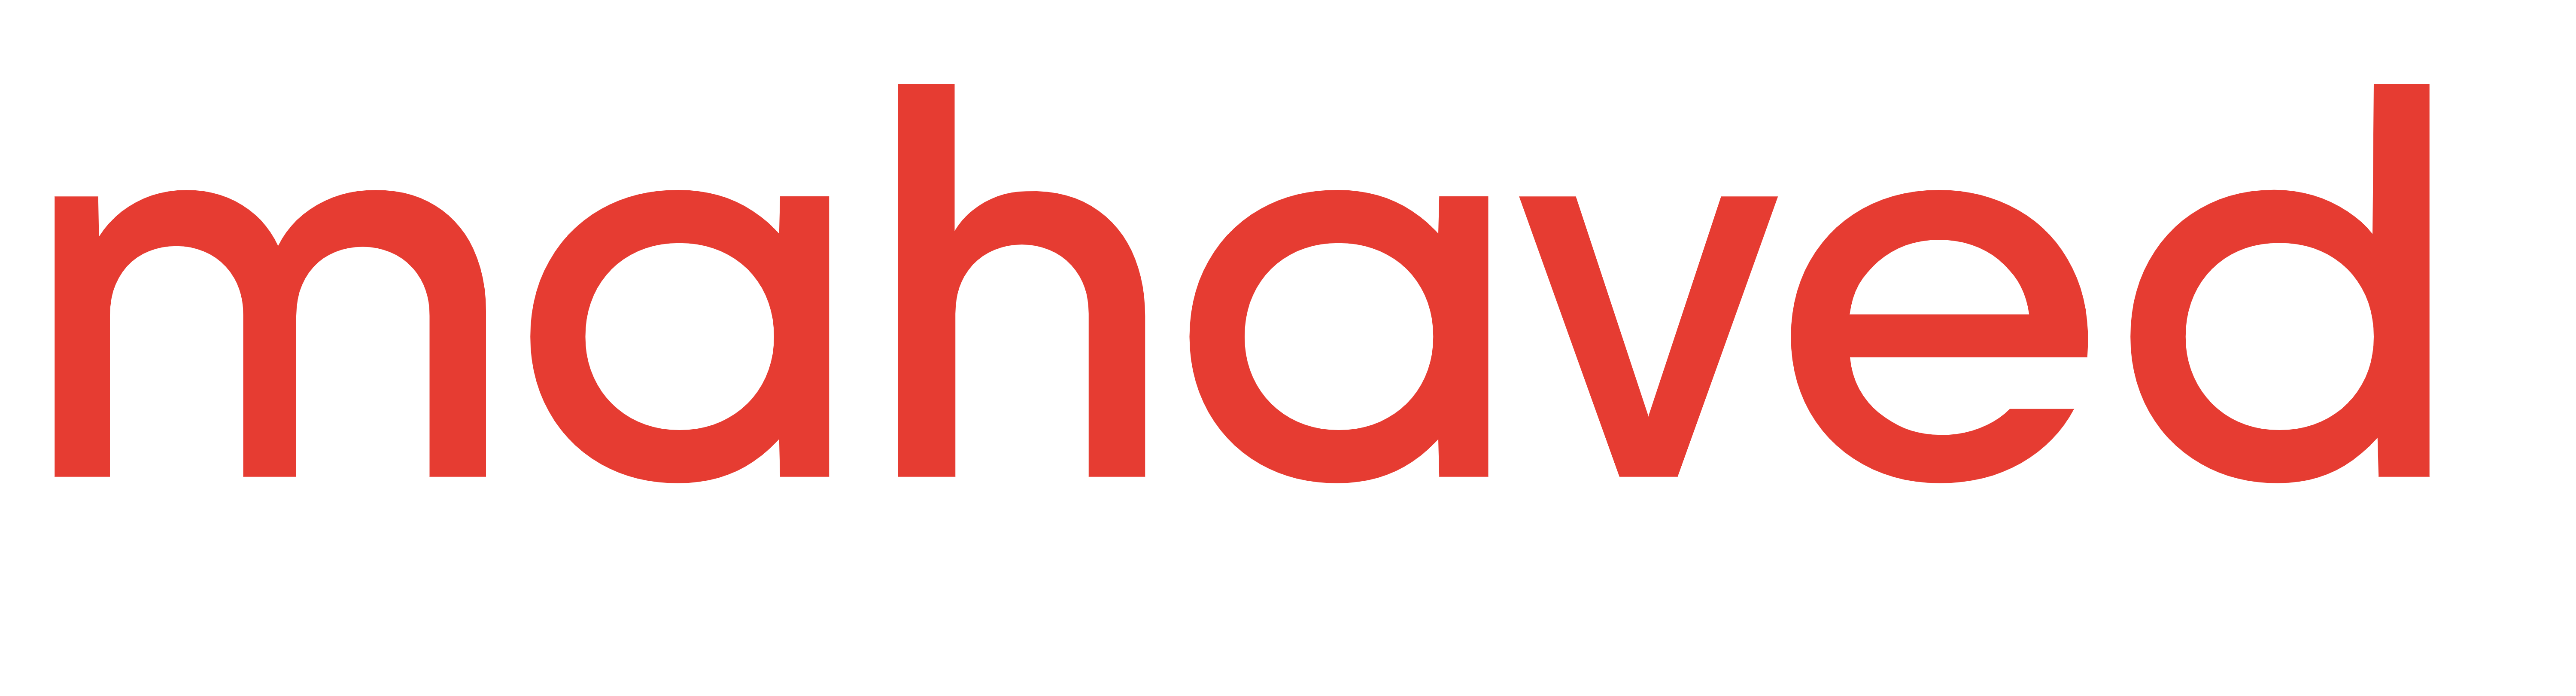 mahaved.com_logo